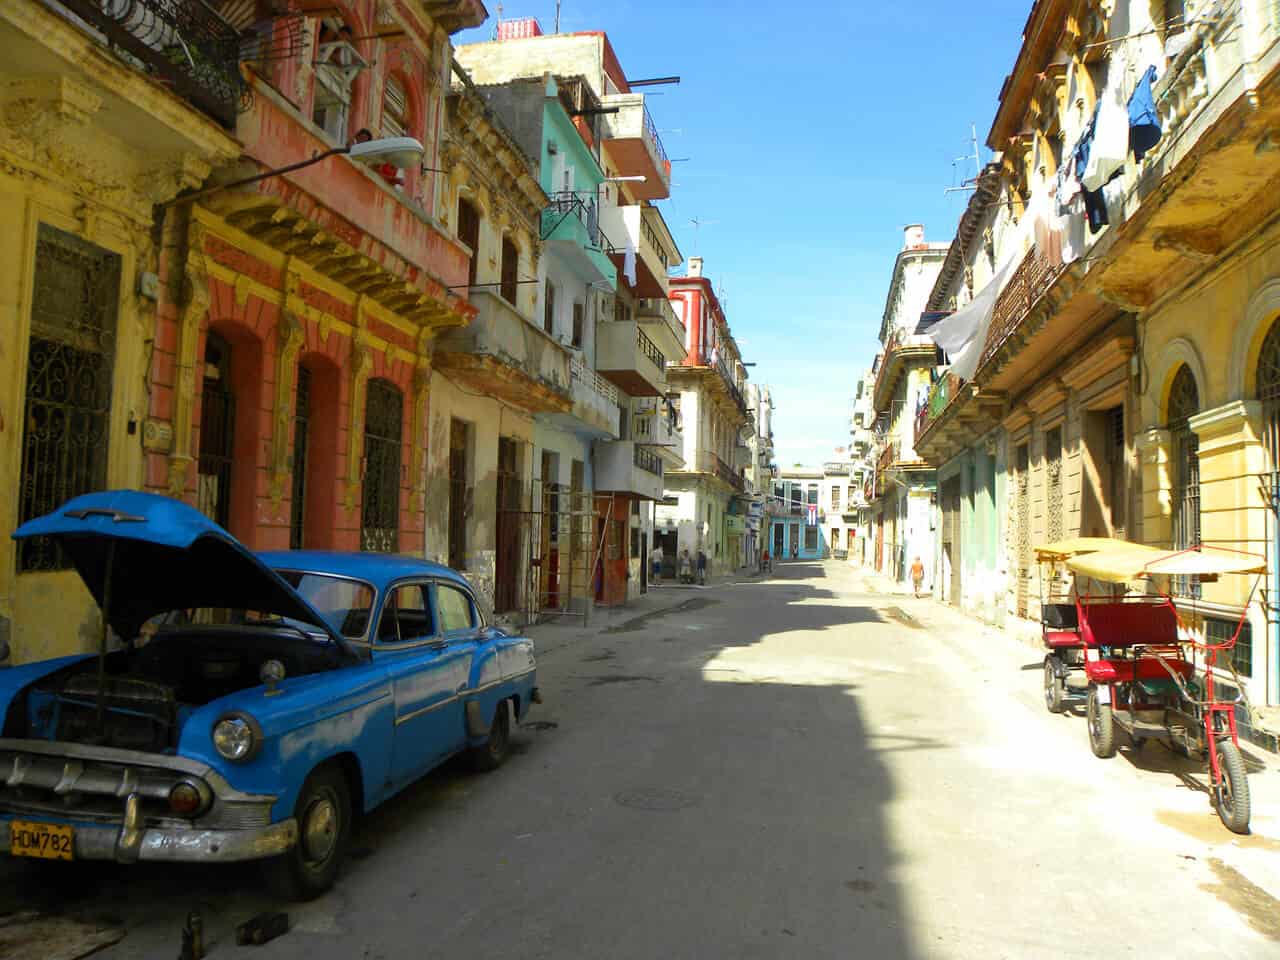 Old car in Havana